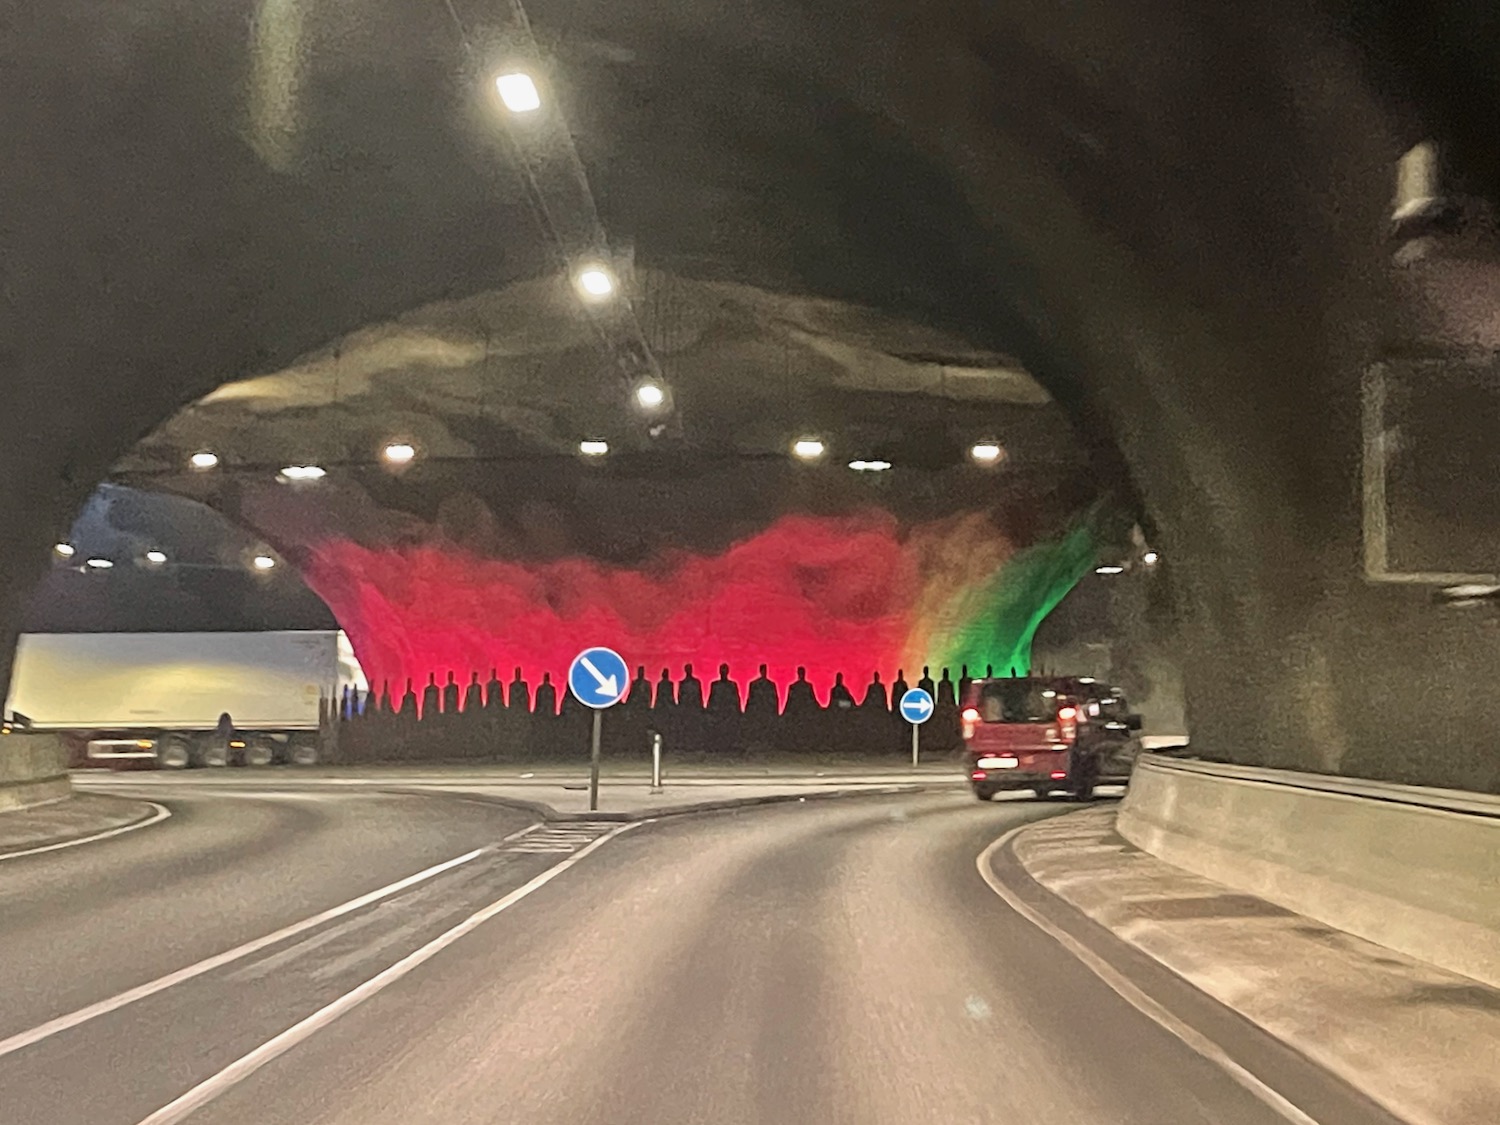 a car driving through a tunnel